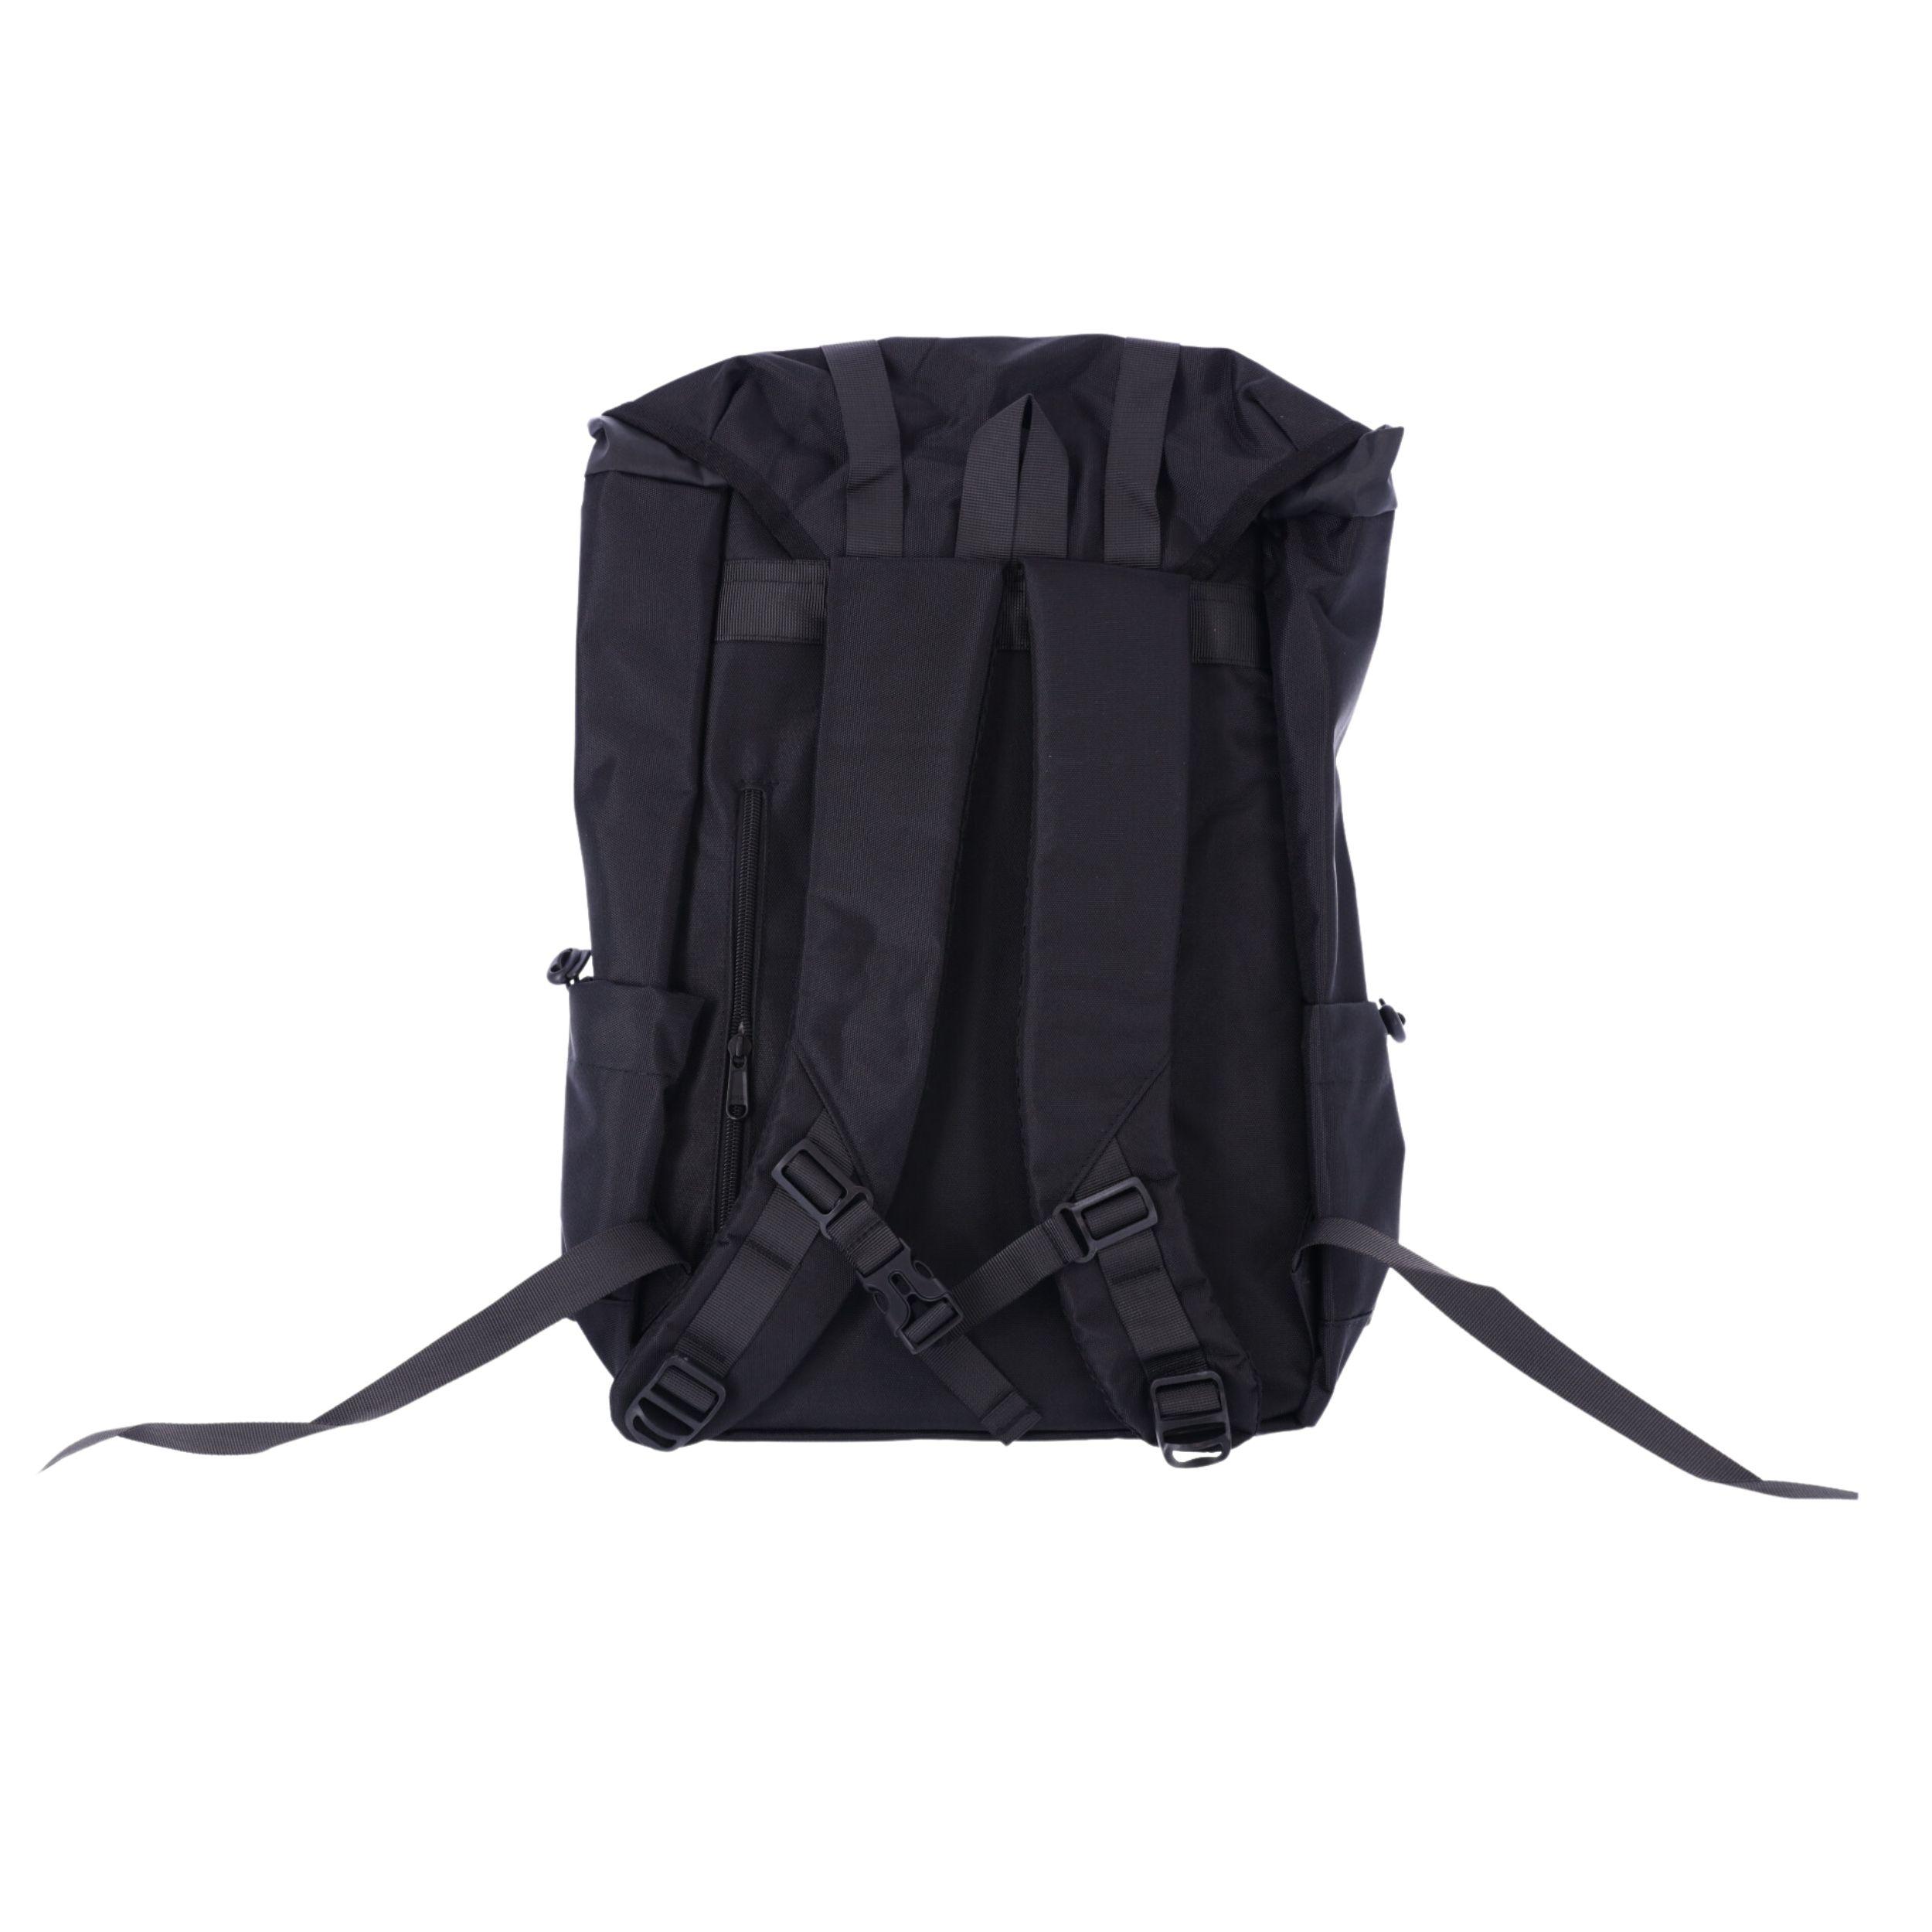 Plecak szkolny, podróżny z miejscem na laptopa 15,6" - czarny